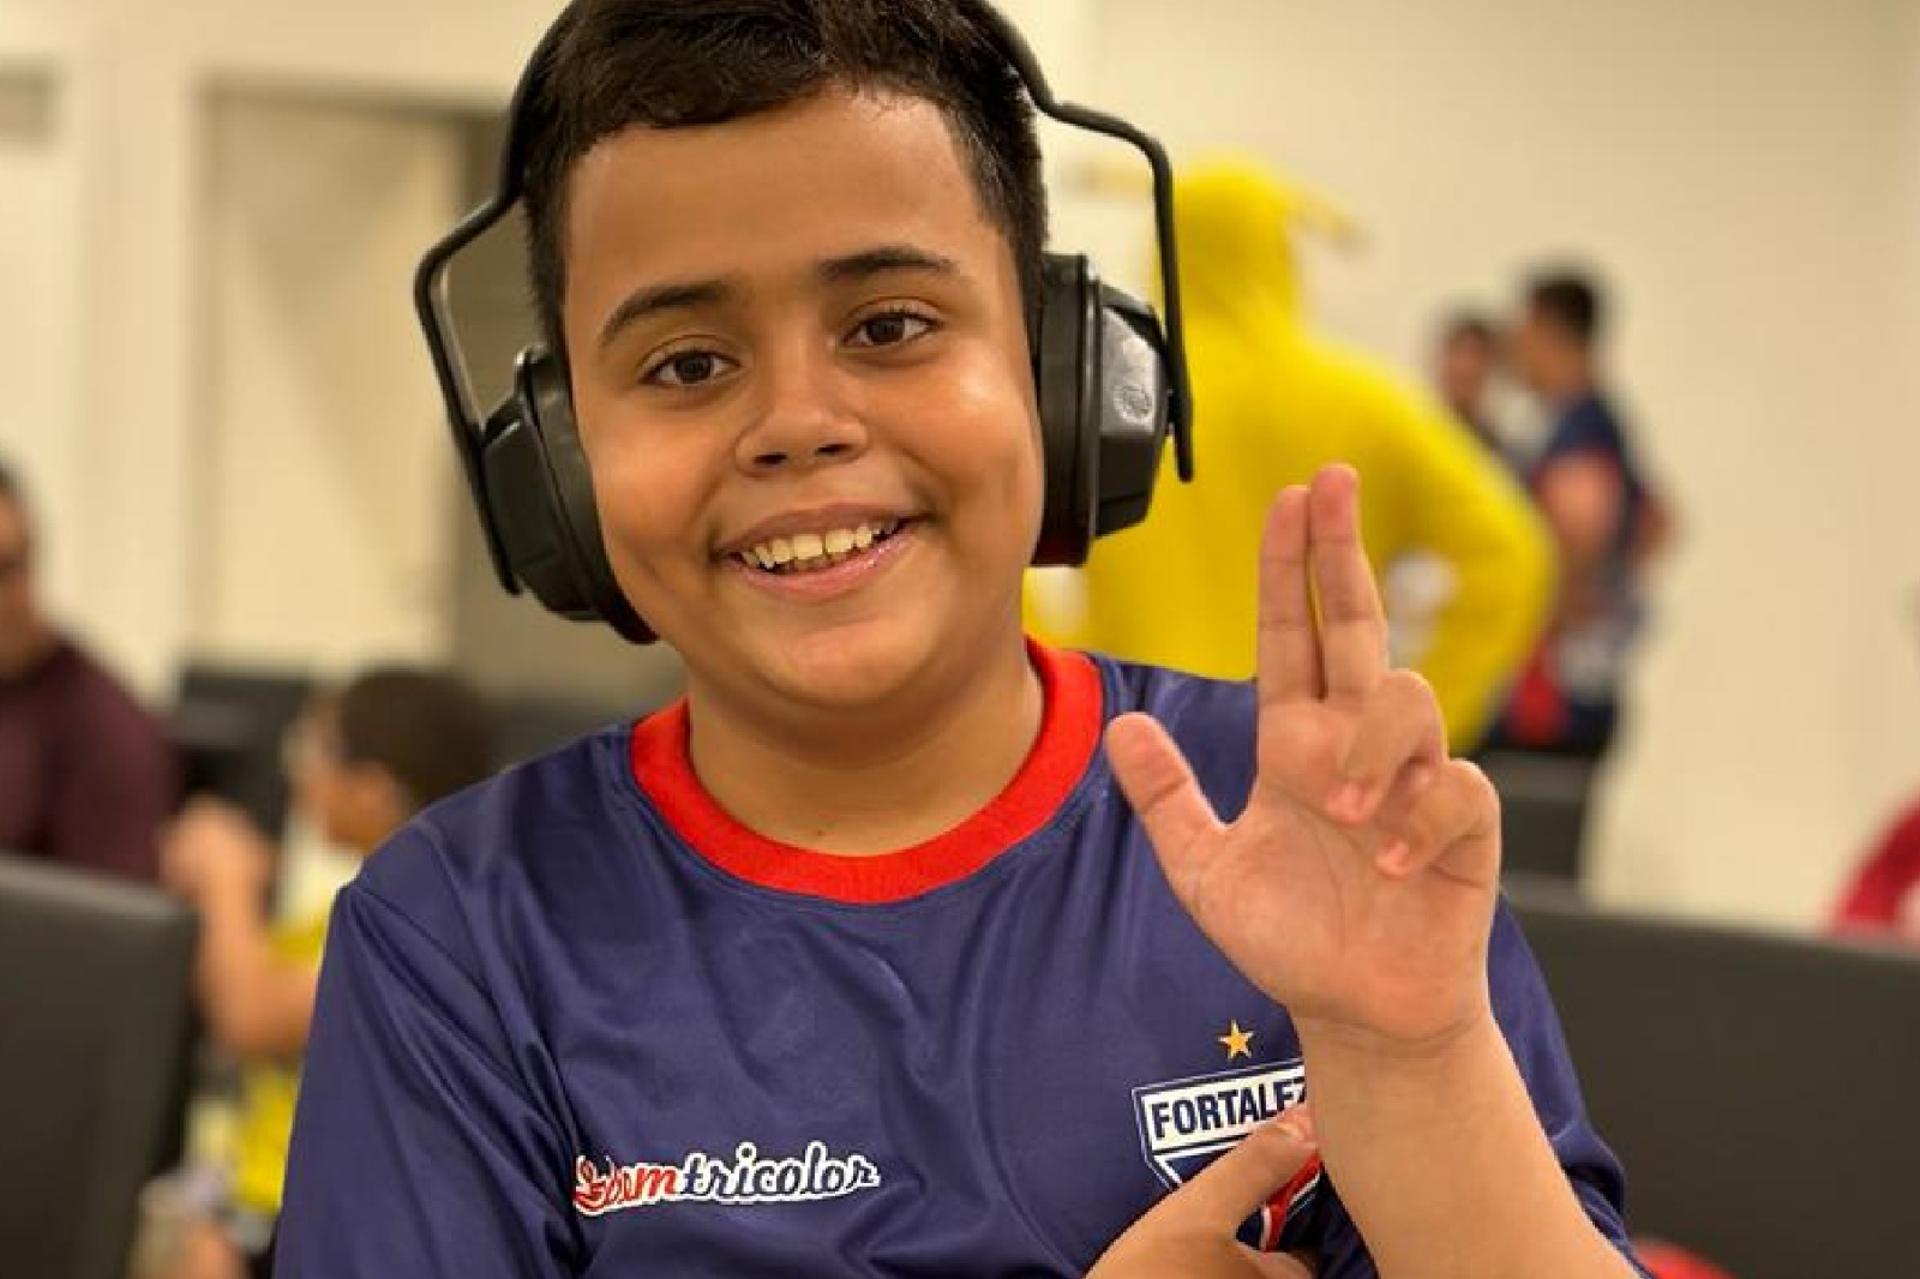 Ação do Fortaleza com abafadores para crianças com autismo